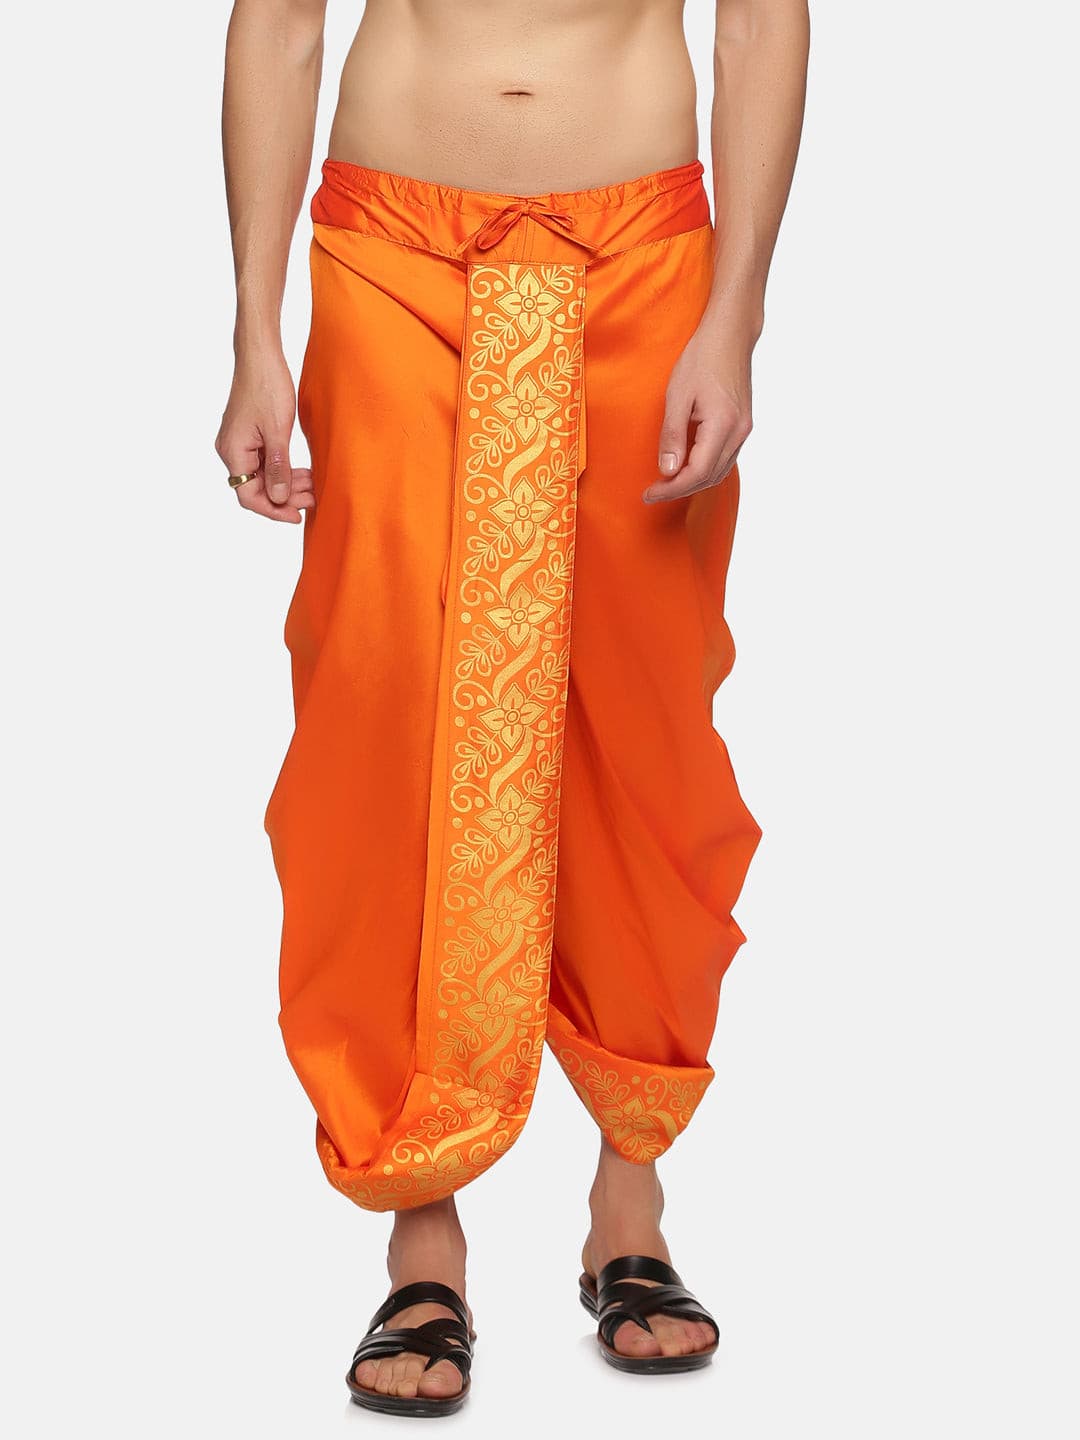 Handloom Ikat Cotton TaruNa Dhoti Pants for Men | Dhaaga | AdiValka